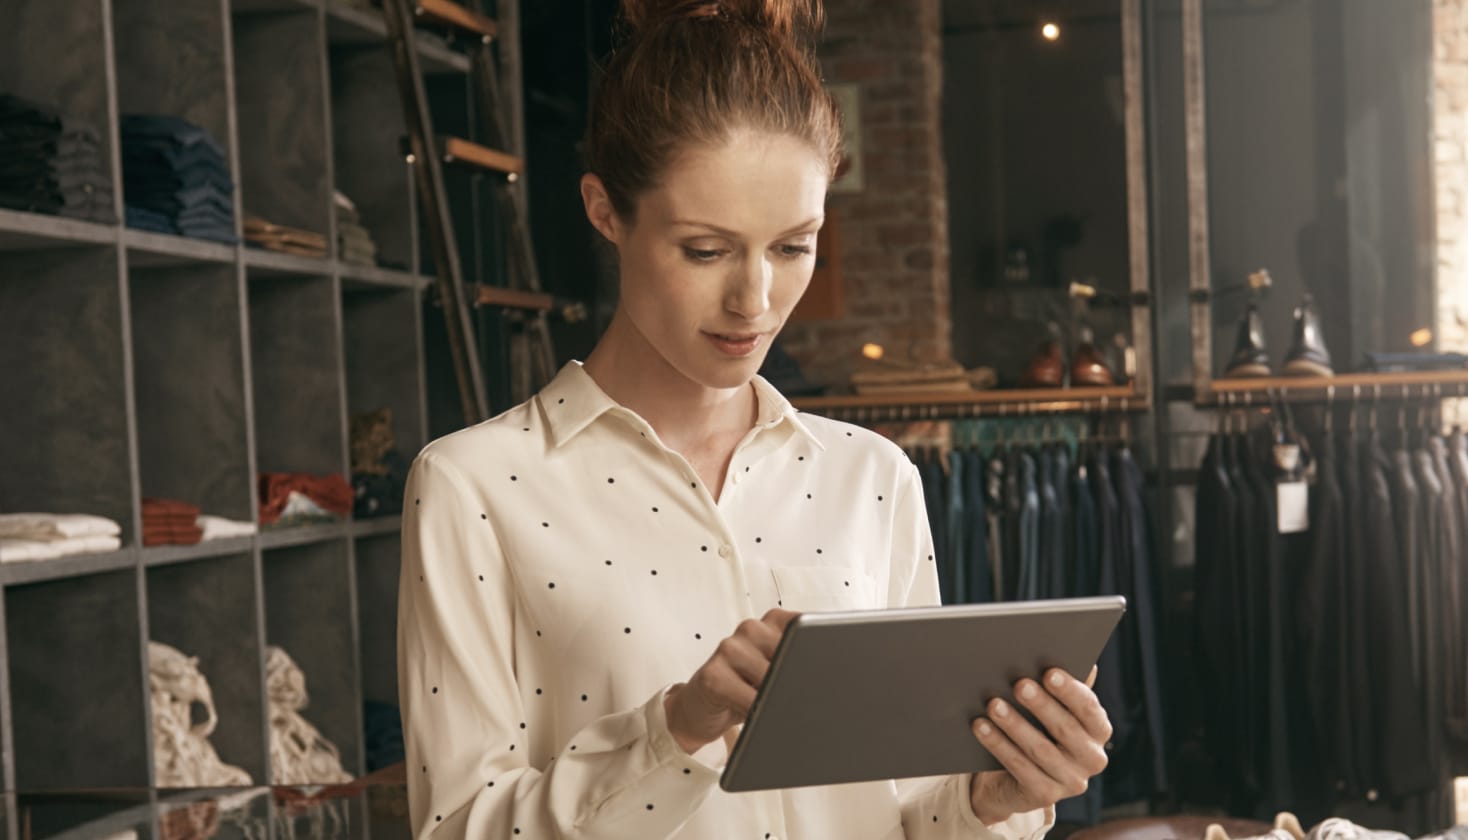 En person i en tøjbutik, der kigger på en tablet og formodentlig læser feedback på en kundeundersøgelse